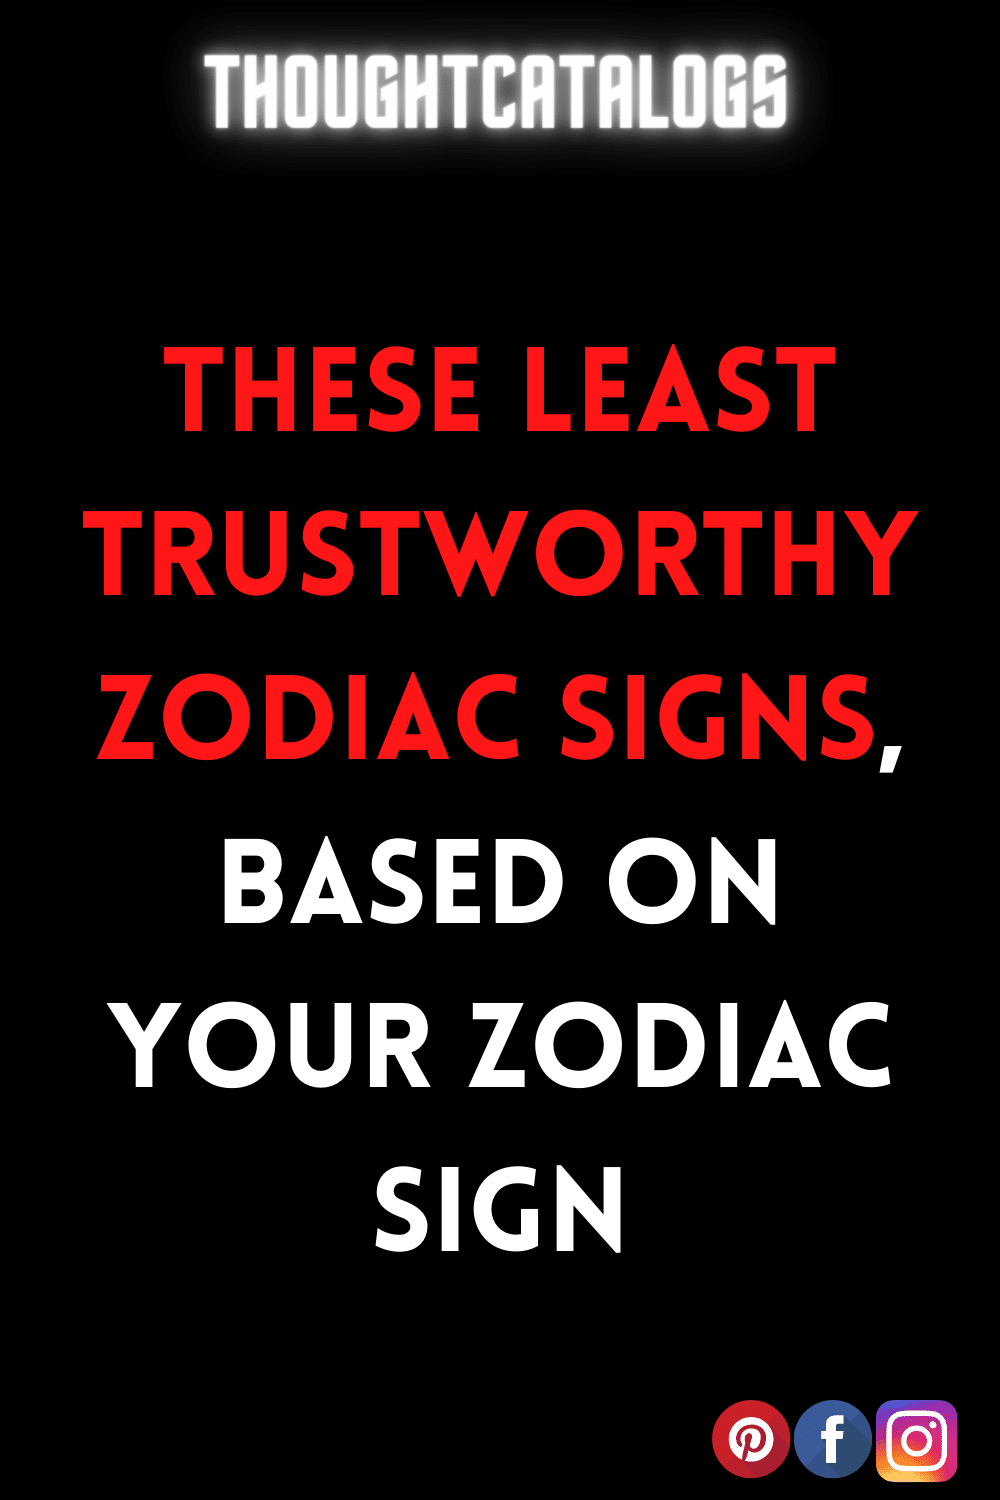  #Astrology2022 #horoscope2022 #ZodiacSigns2022 #zodiac #astrology #zodiacsigns #horoscope #capricorn #virgo #aries #leo #scorpio #pisces #libra #cancer #taurus #aquarius #gemini #zodiacmemes #sagittarius #horoscopes #love #zodiacsign #zodiacposts #astrologymemes #zodiacfacts #astrologyposts #tarot #zodiacs #art #zodiaco #zodiacpost #bhfyp#astrologer #astro #astrologysigns #zodiaclove